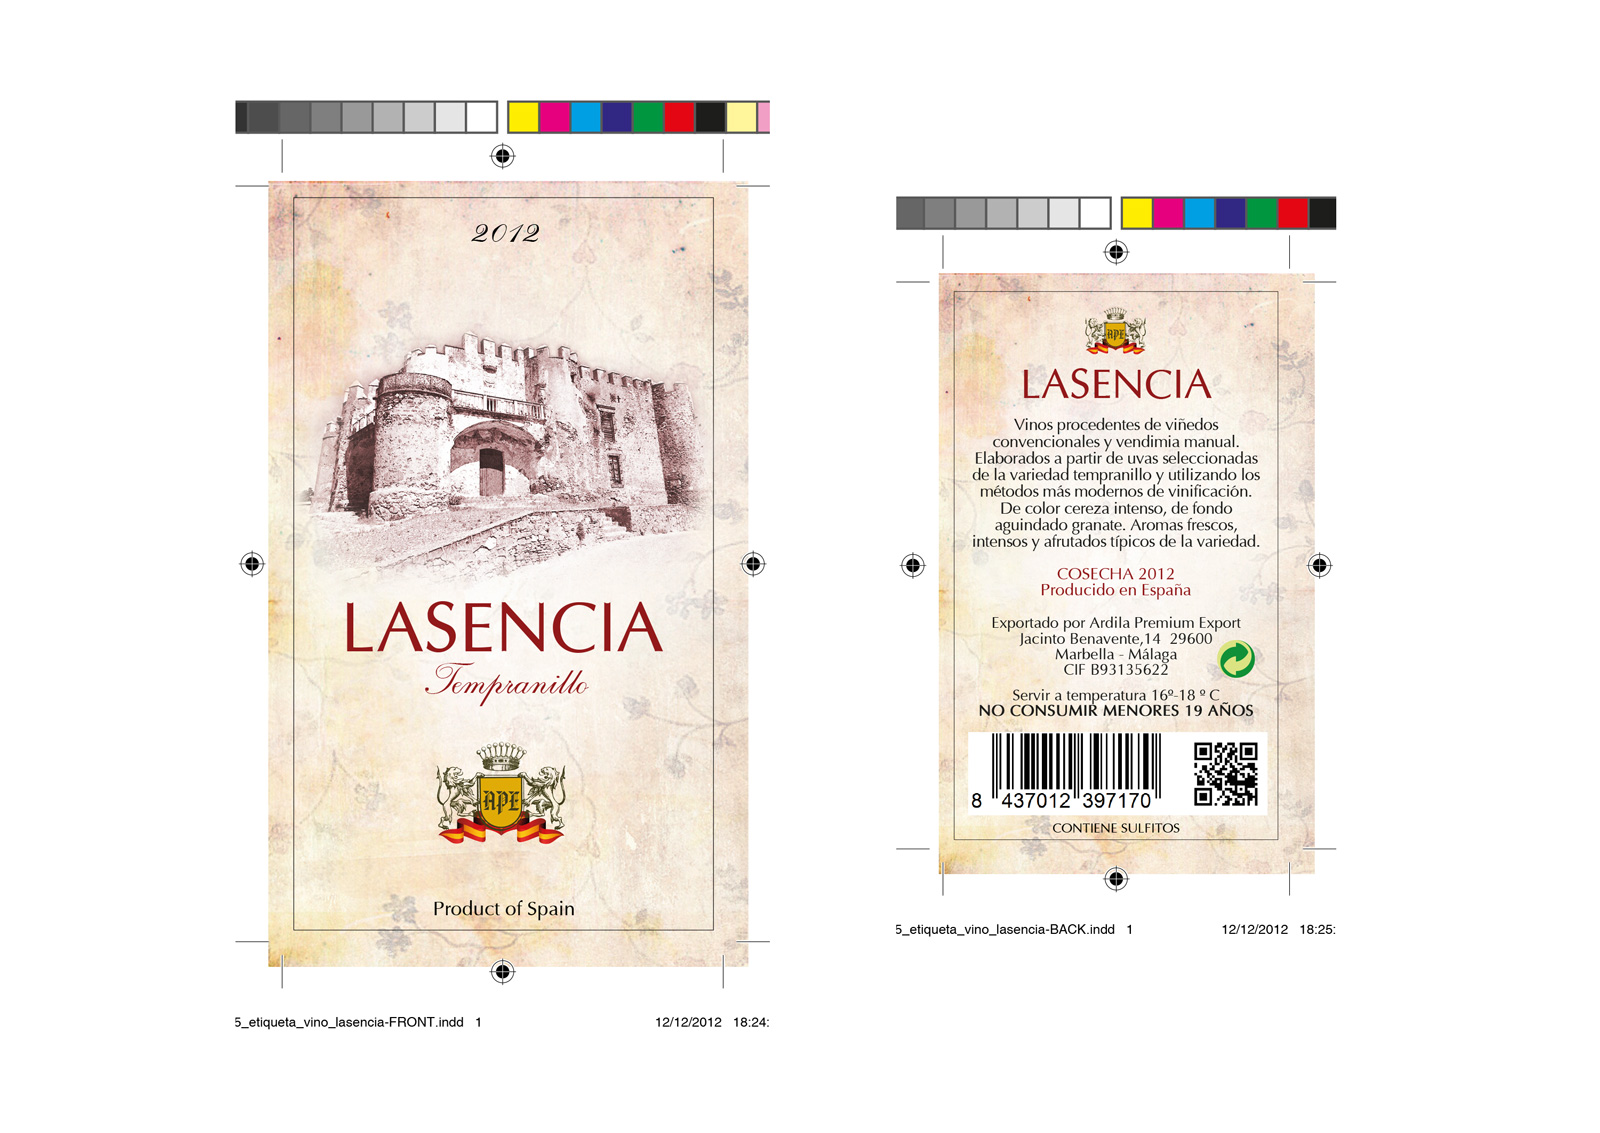 Diseño gráfico y creativo de etiquetas y packaging de vino para exportación en Europa LASENCIA